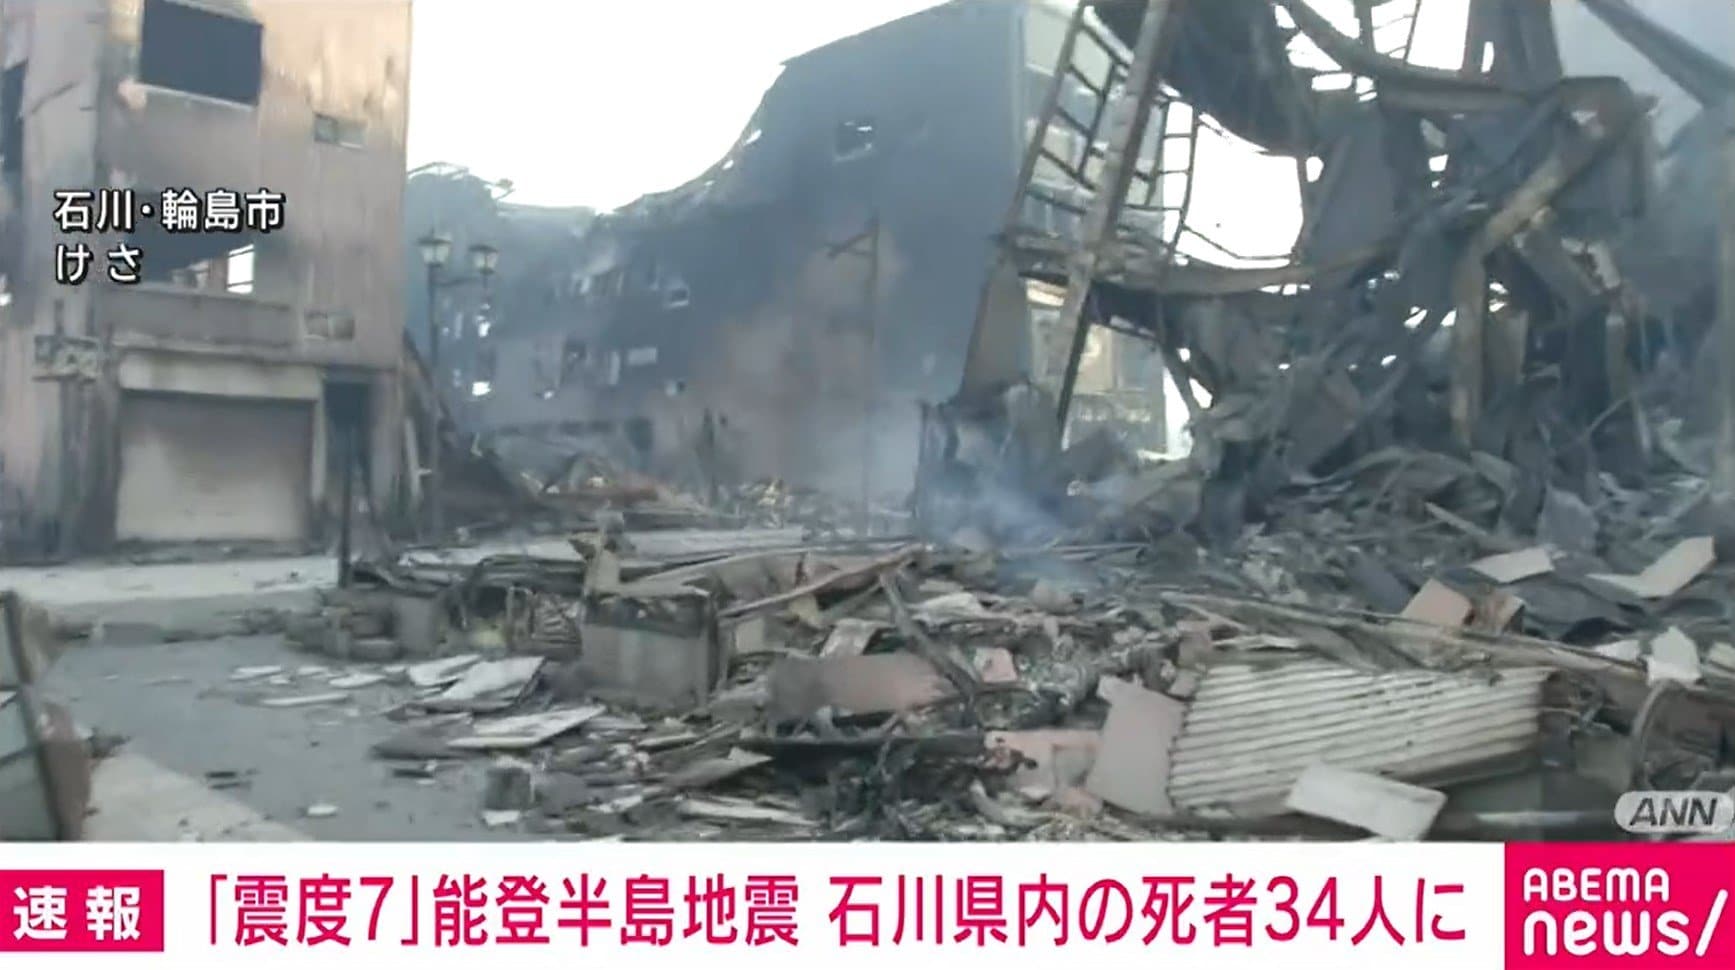 震度7」能登半島地震 石川県内の死者34人に（ABEMA TIMES）｜ｄメニューニュース（NTTドコモ）